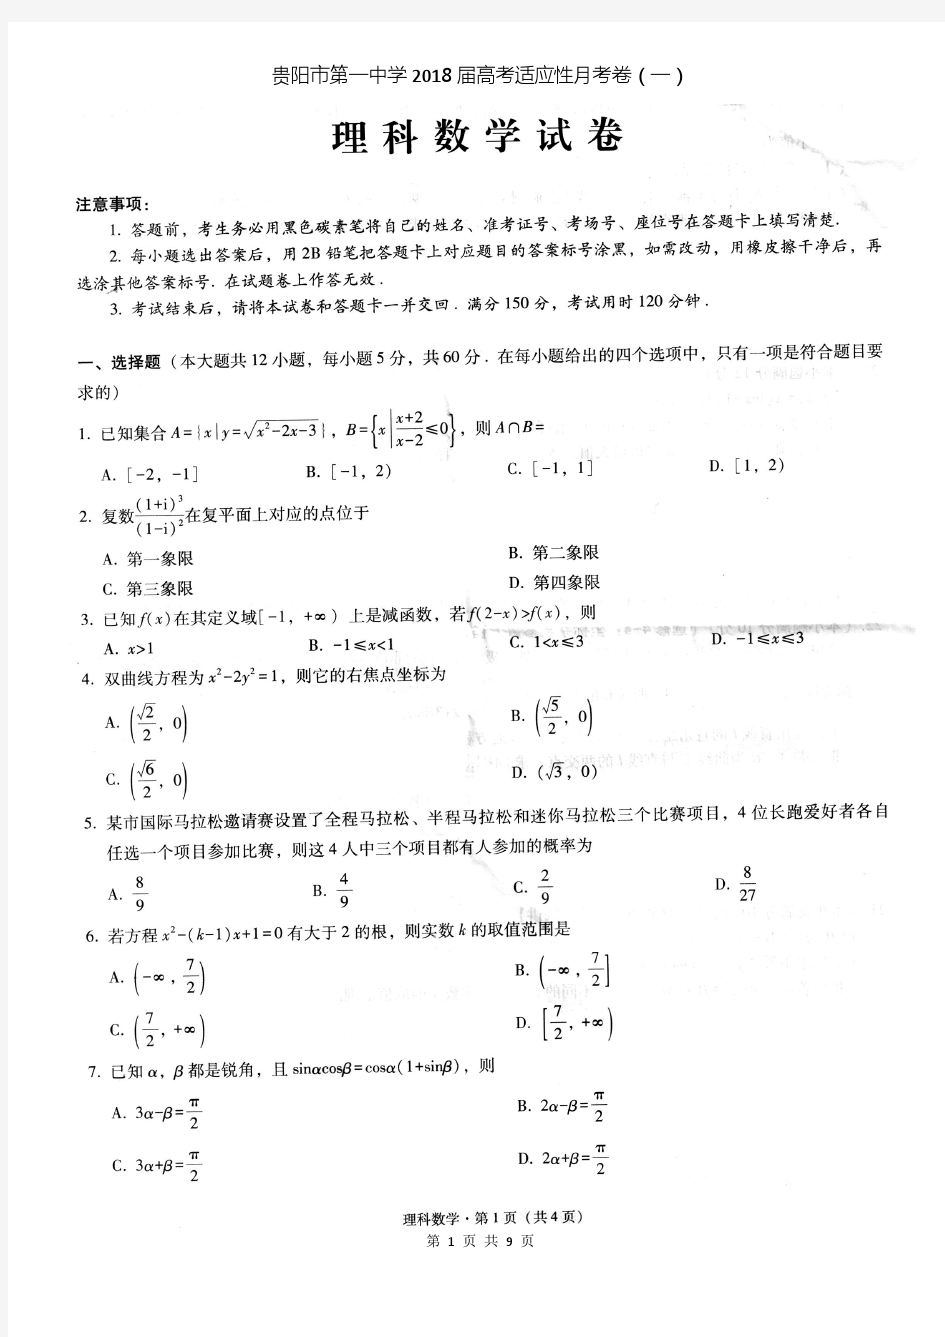 贵阳市第一中学2018届高考适应性月考卷(一)理科数学(含答案)